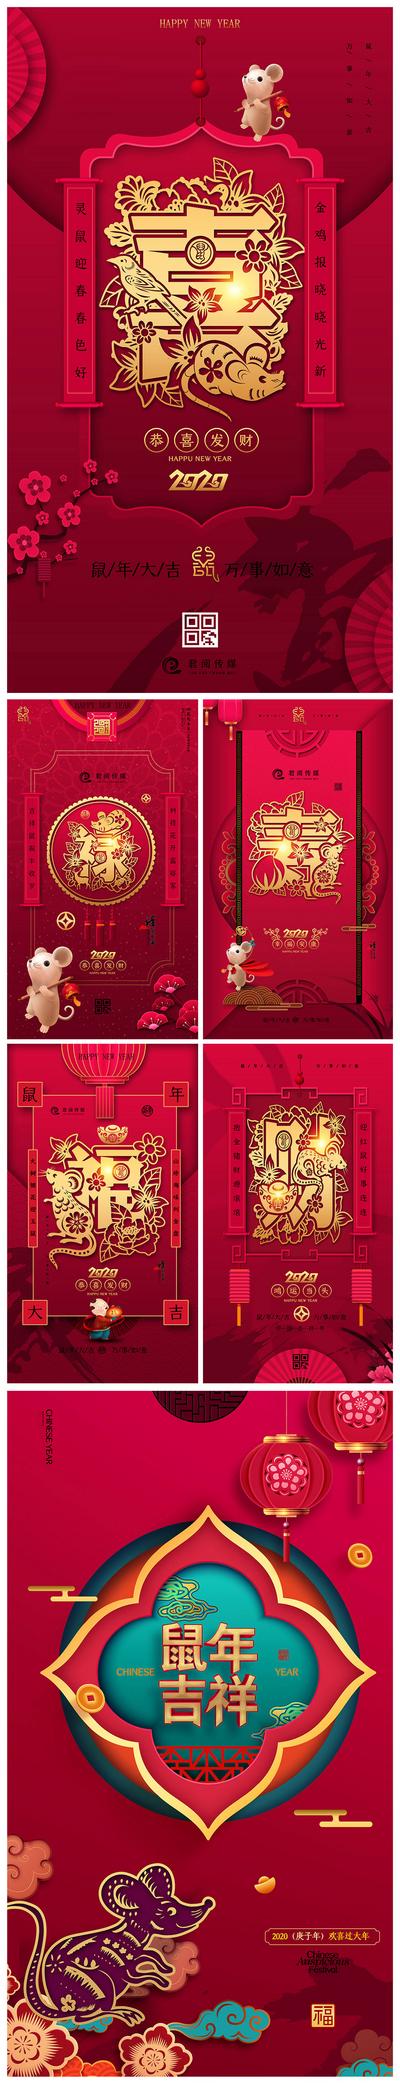 南门网 海报 鼠年 贺岁 新年 春节 中国传统节日 喜气 剪纸风 红金 对联